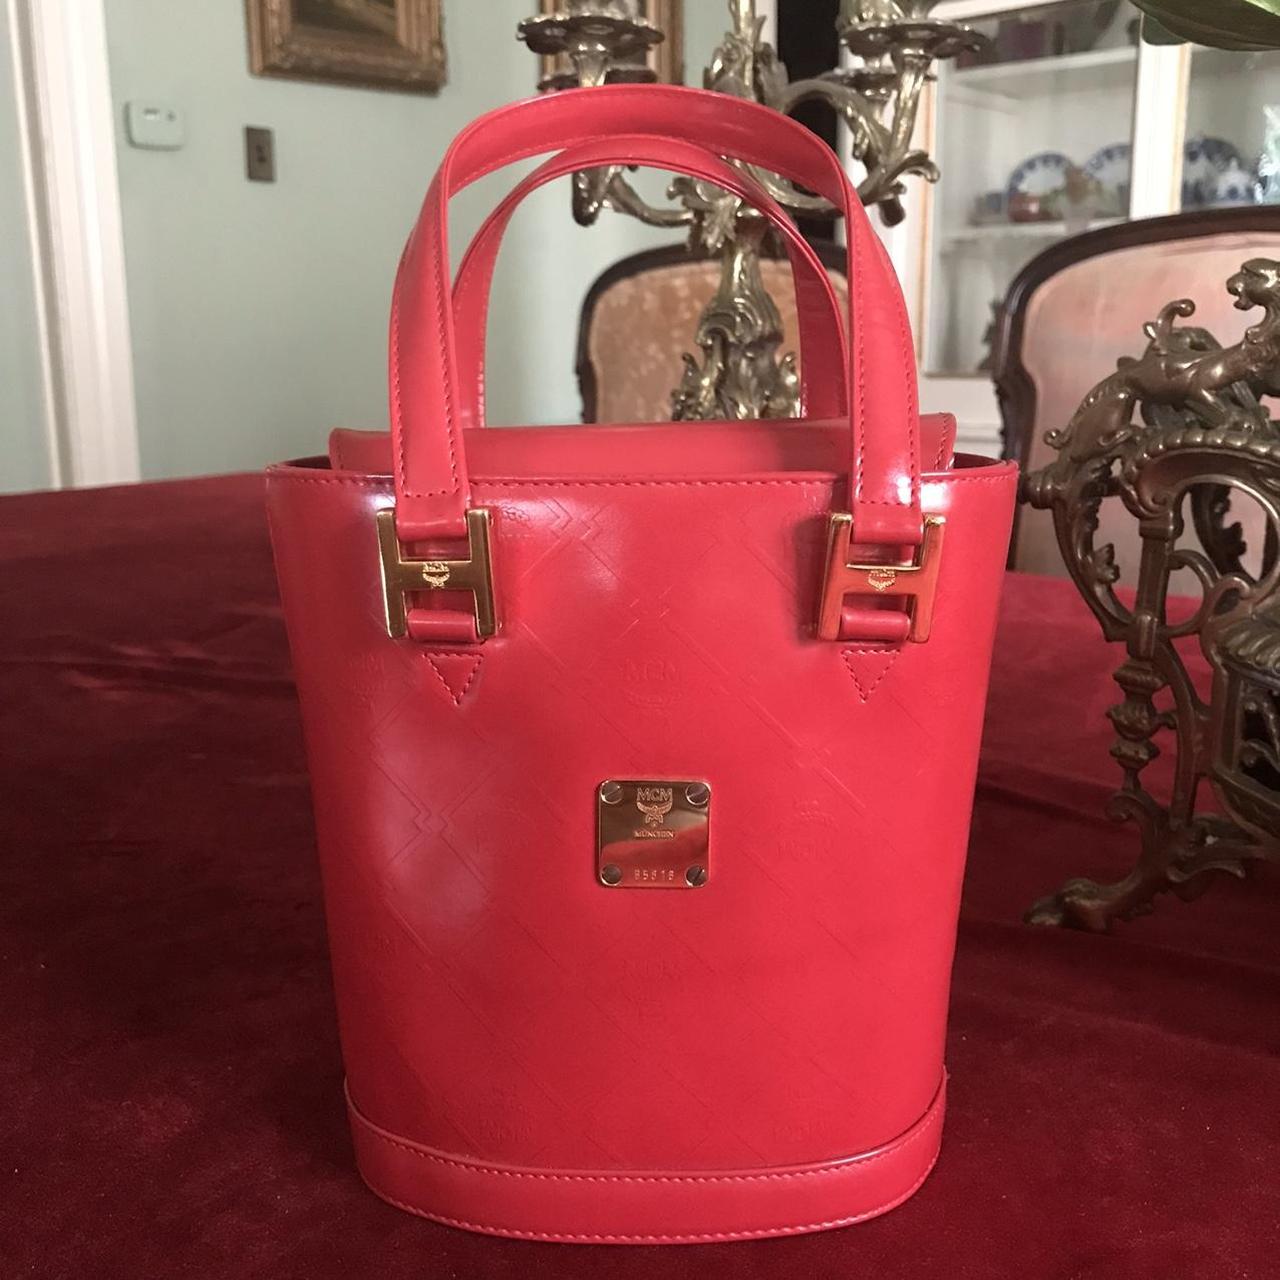 Mcm Women's Bag - Red